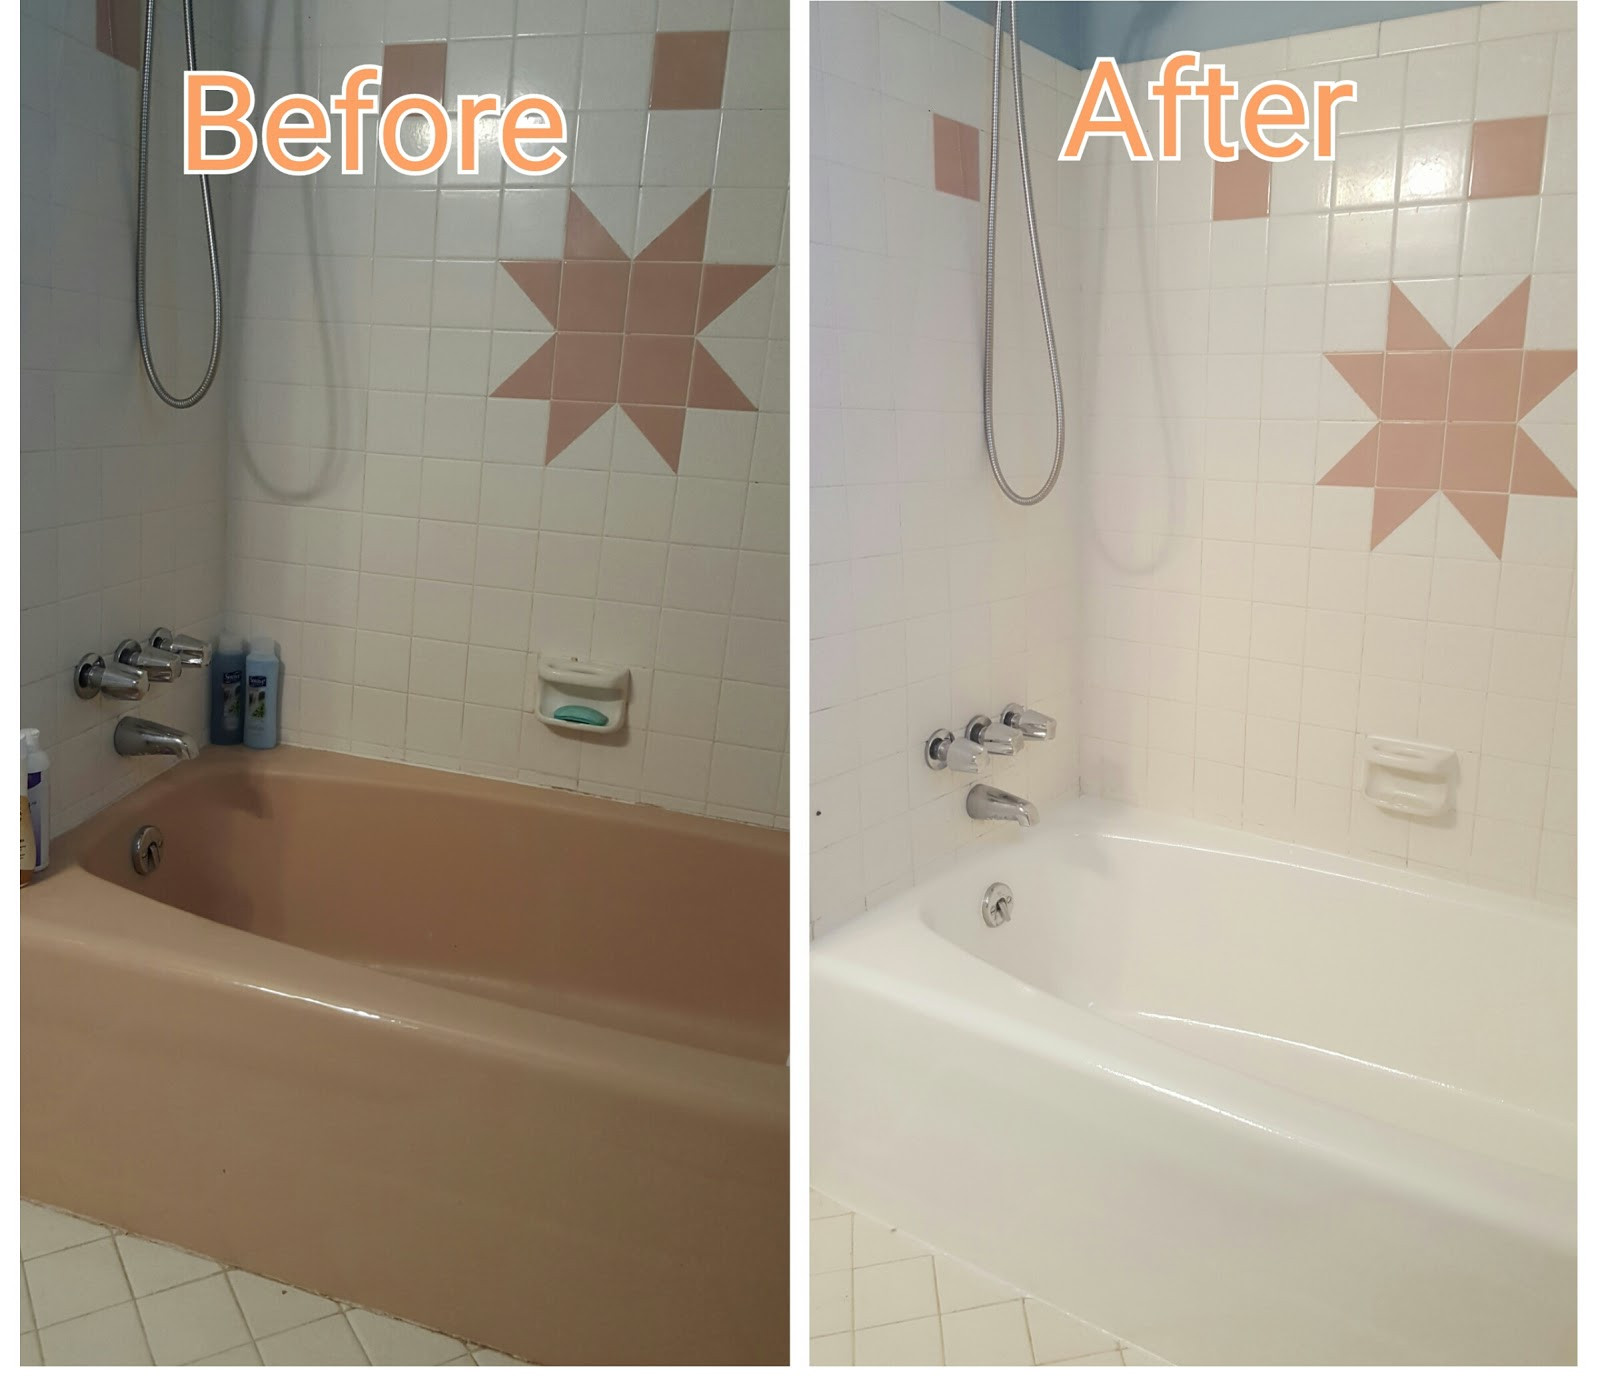 DIY Bathtub Refinishing Kit Reviews
 Homax Tough As Tile Tub And Sink Refinishing Kit Easy